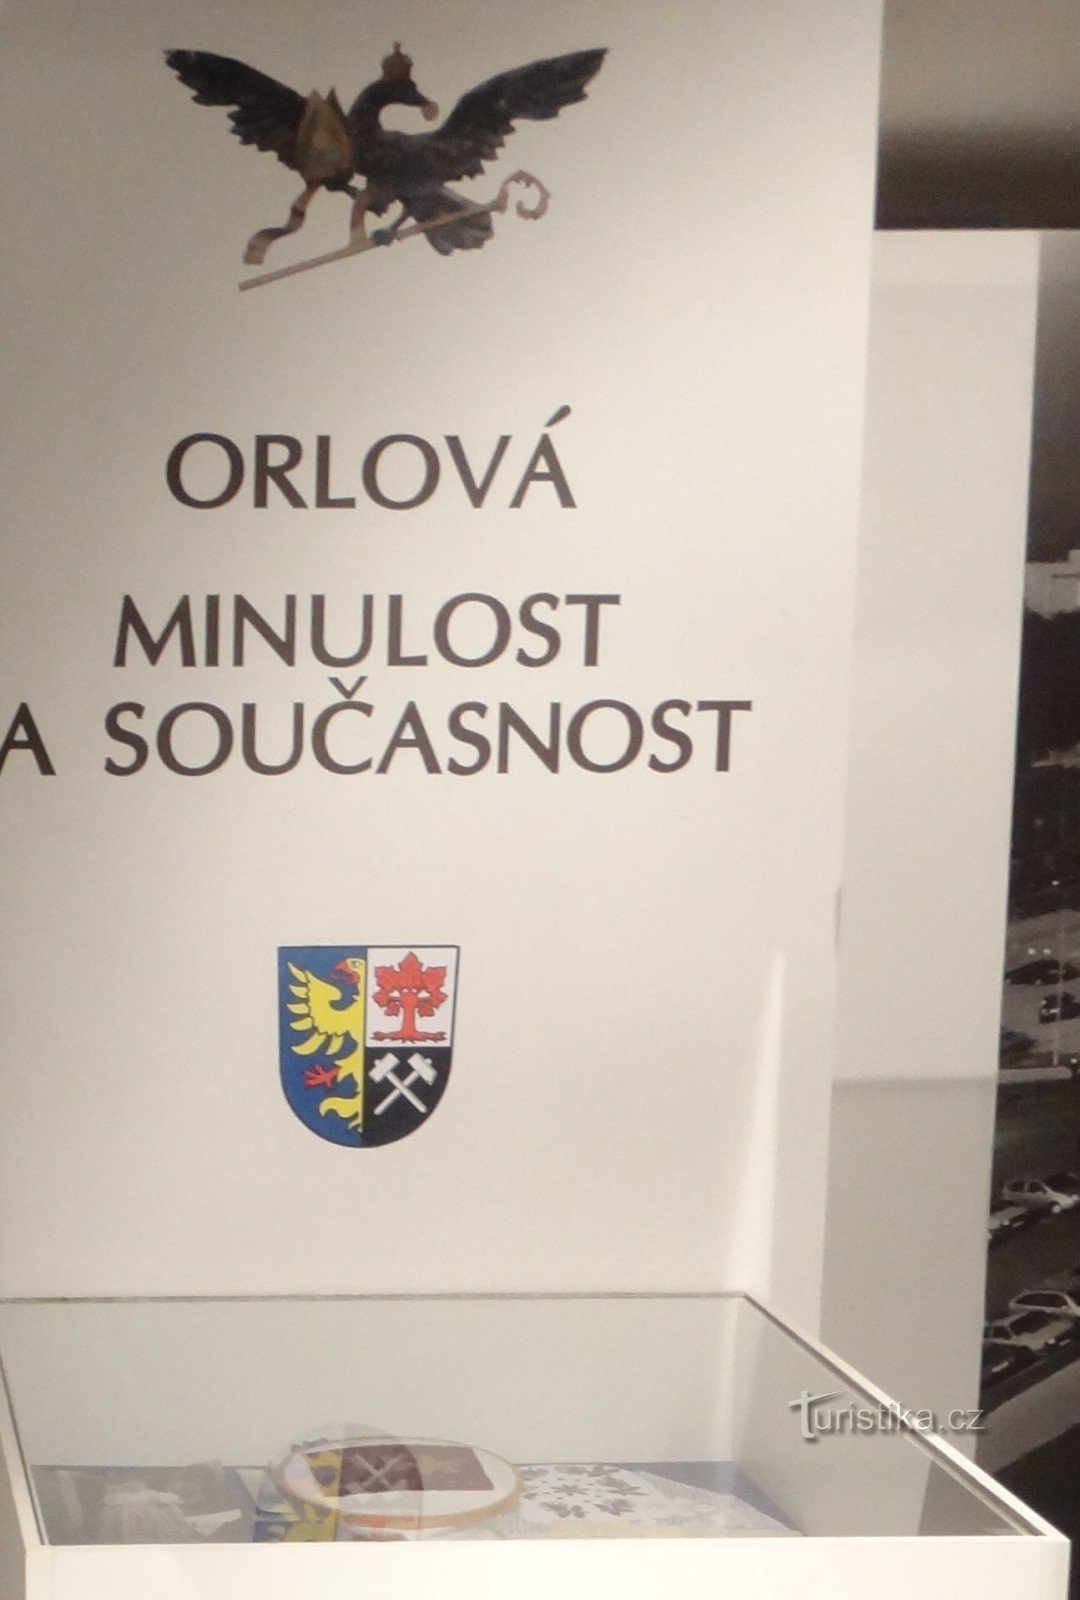 Експозиція Орловського музею минуле і сьогодення